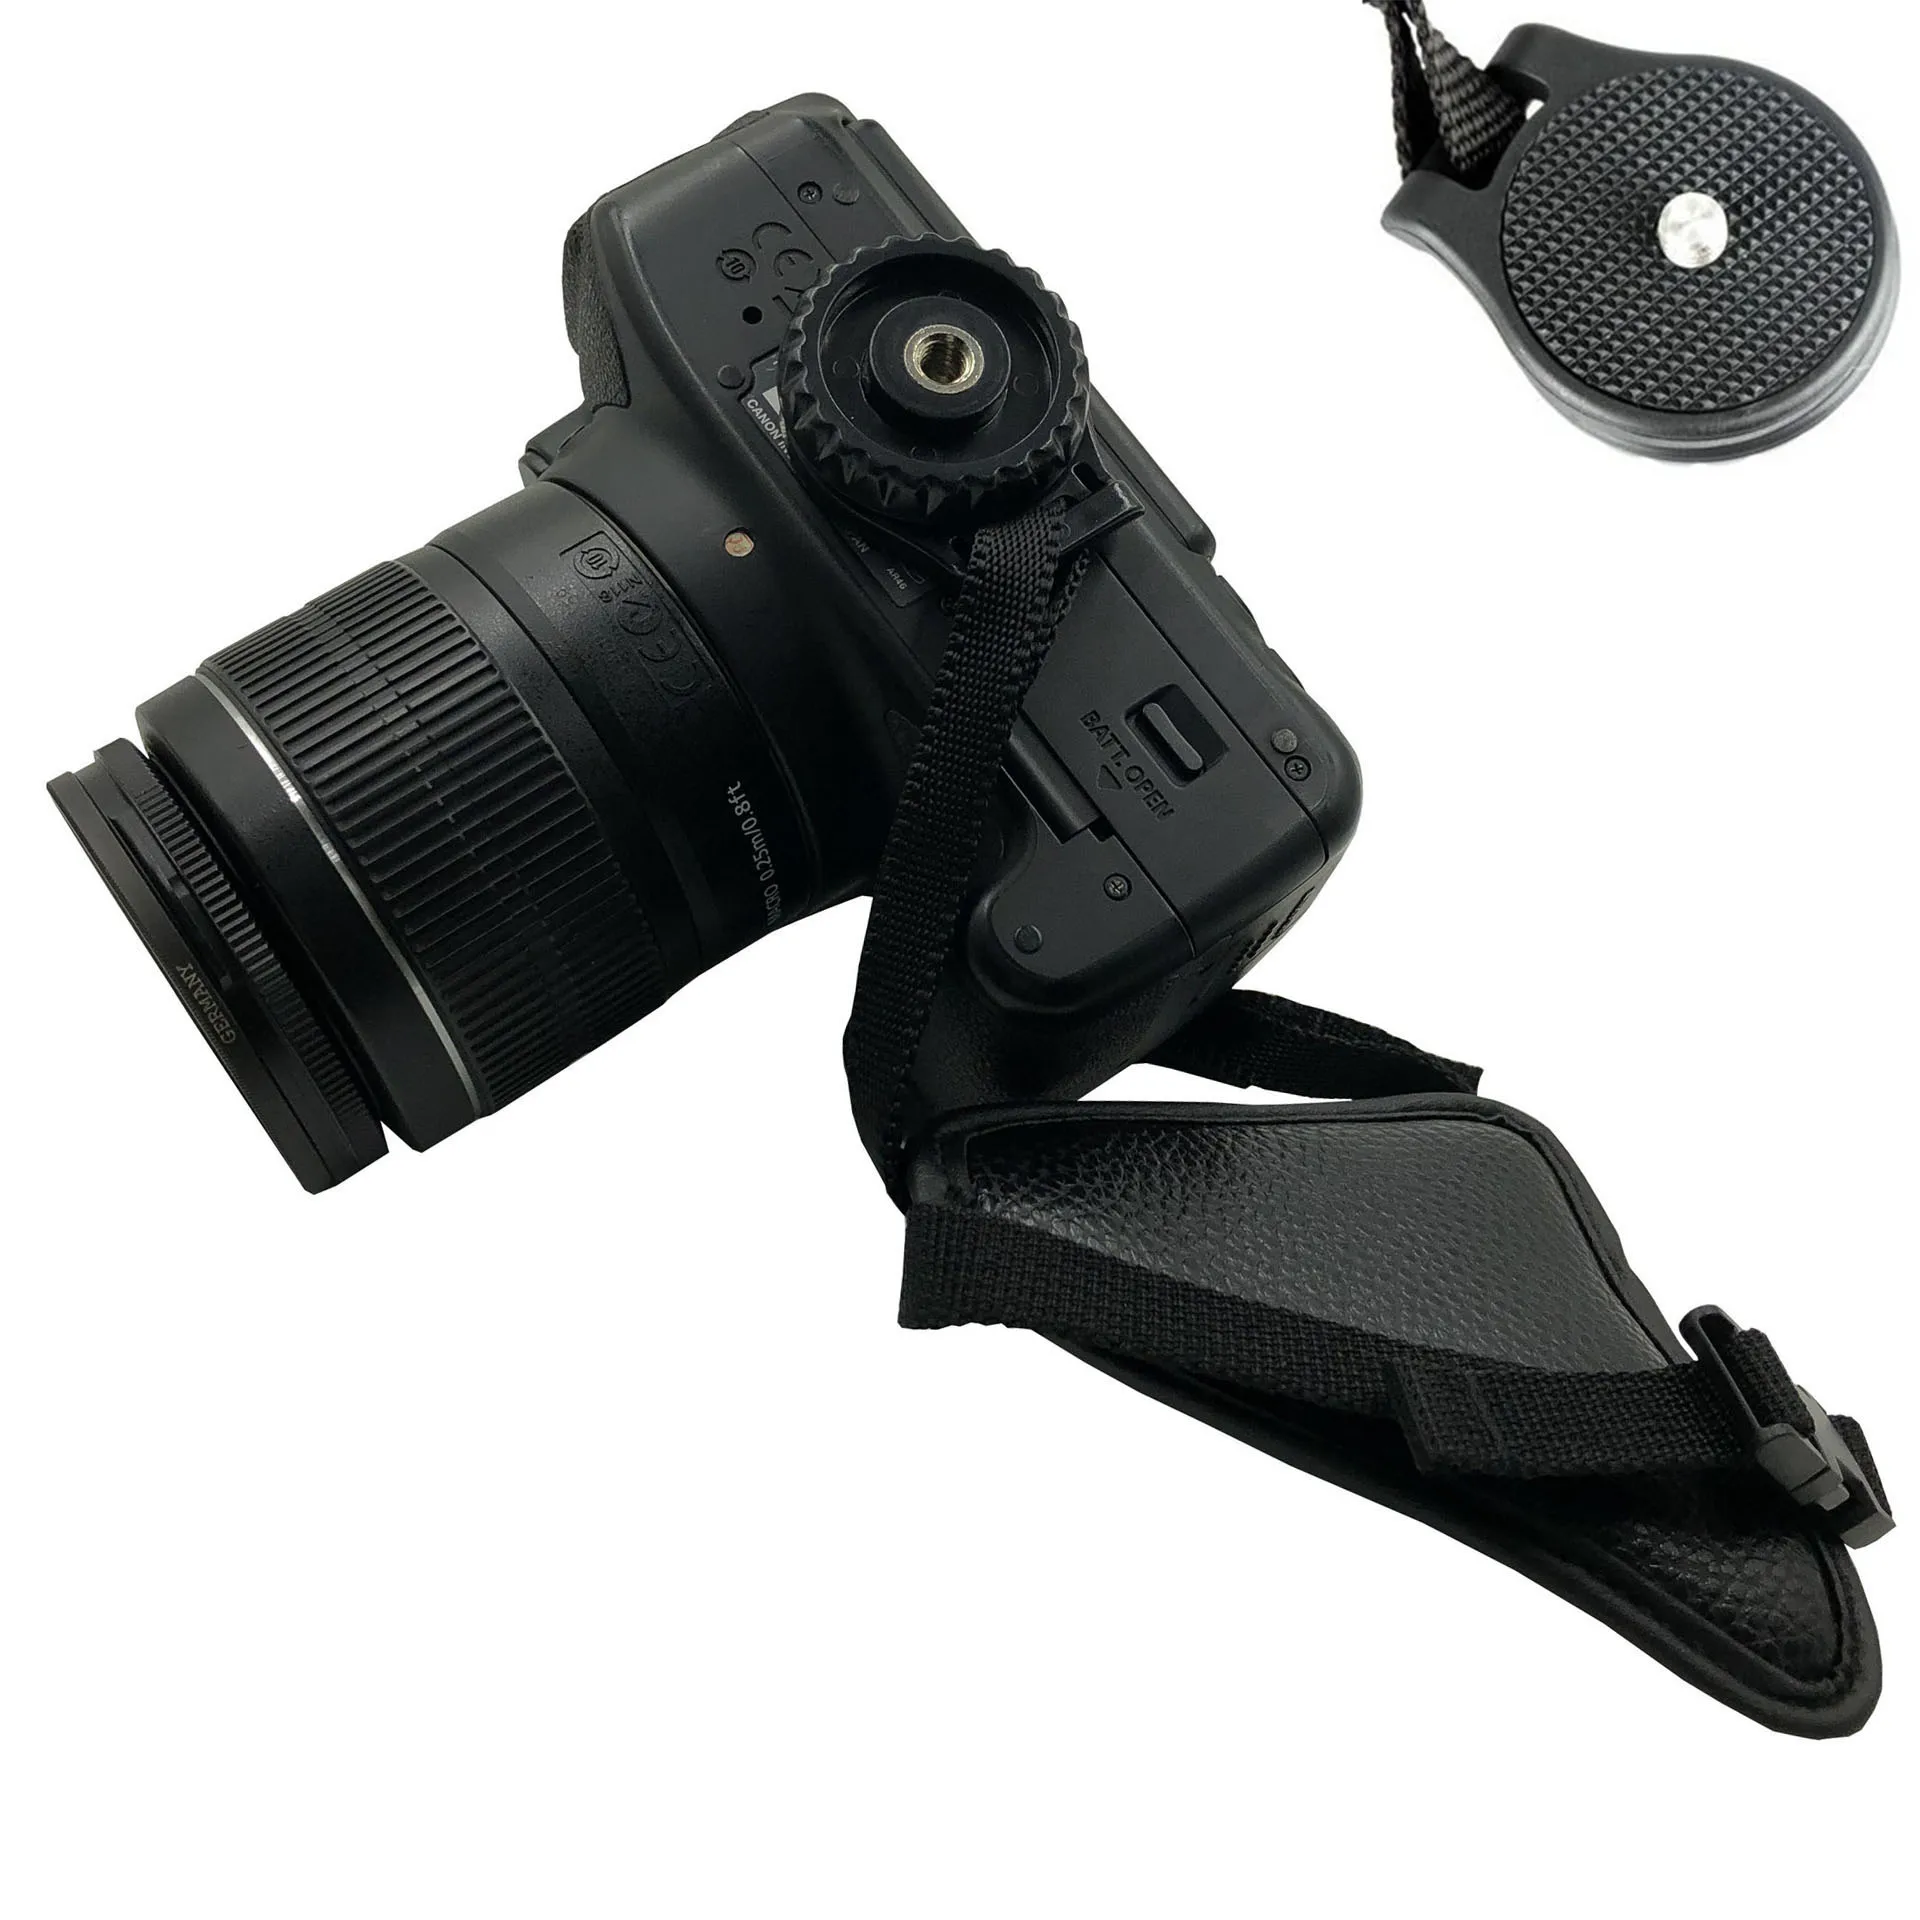 Ah-4 ремень для камеры дслр кожаный ремешок на запястье водонепроницаемый регулируемый ремешок для фотографии прочный профессиональный аксессуары для камеры